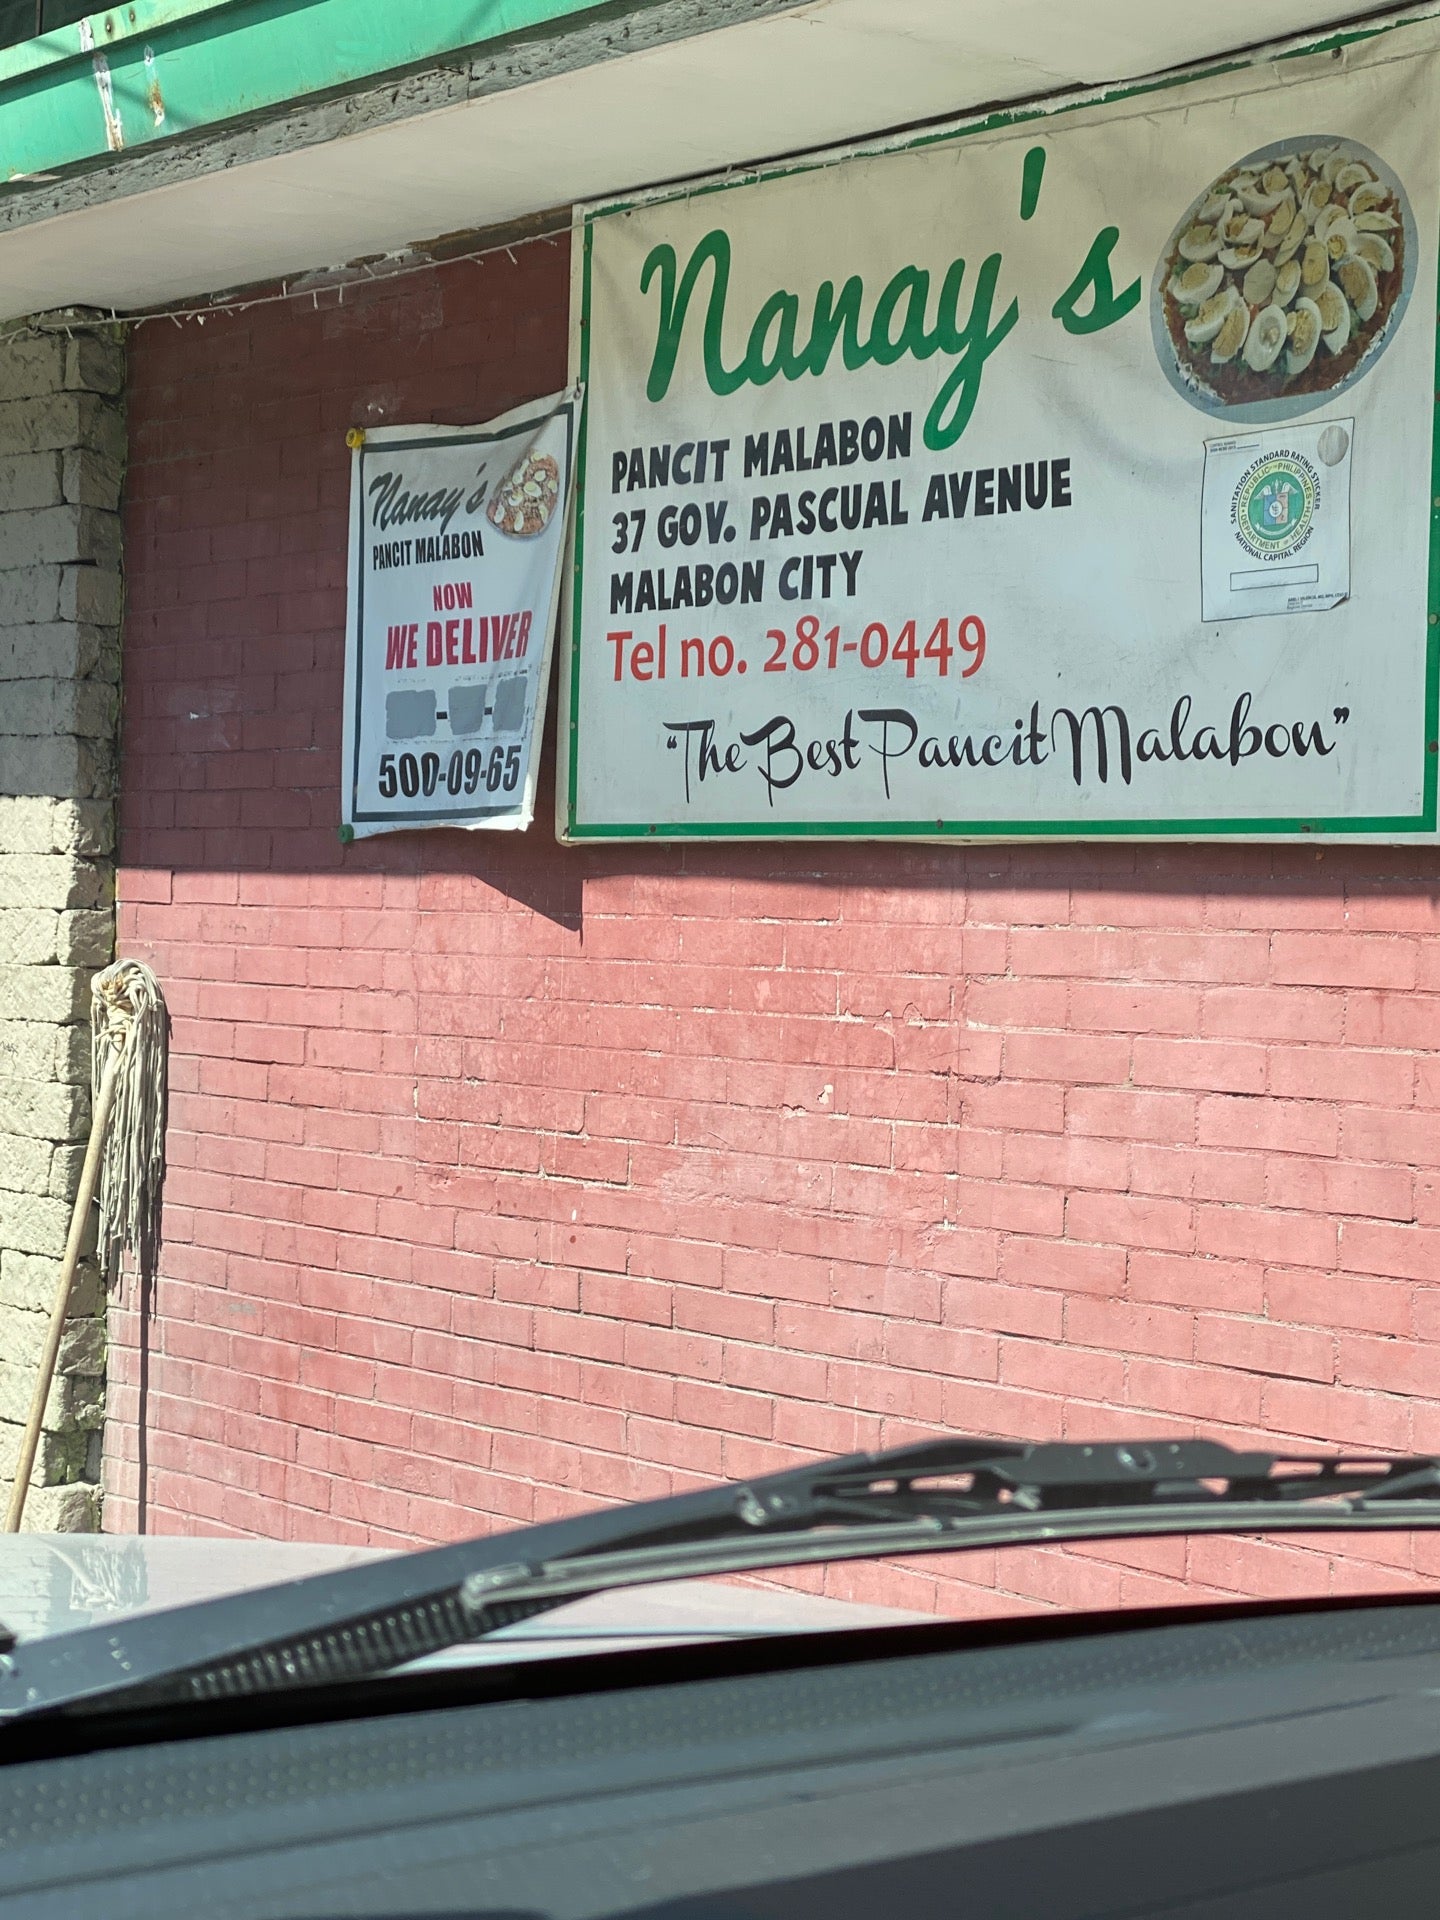 Nanay's Pancit Malabon